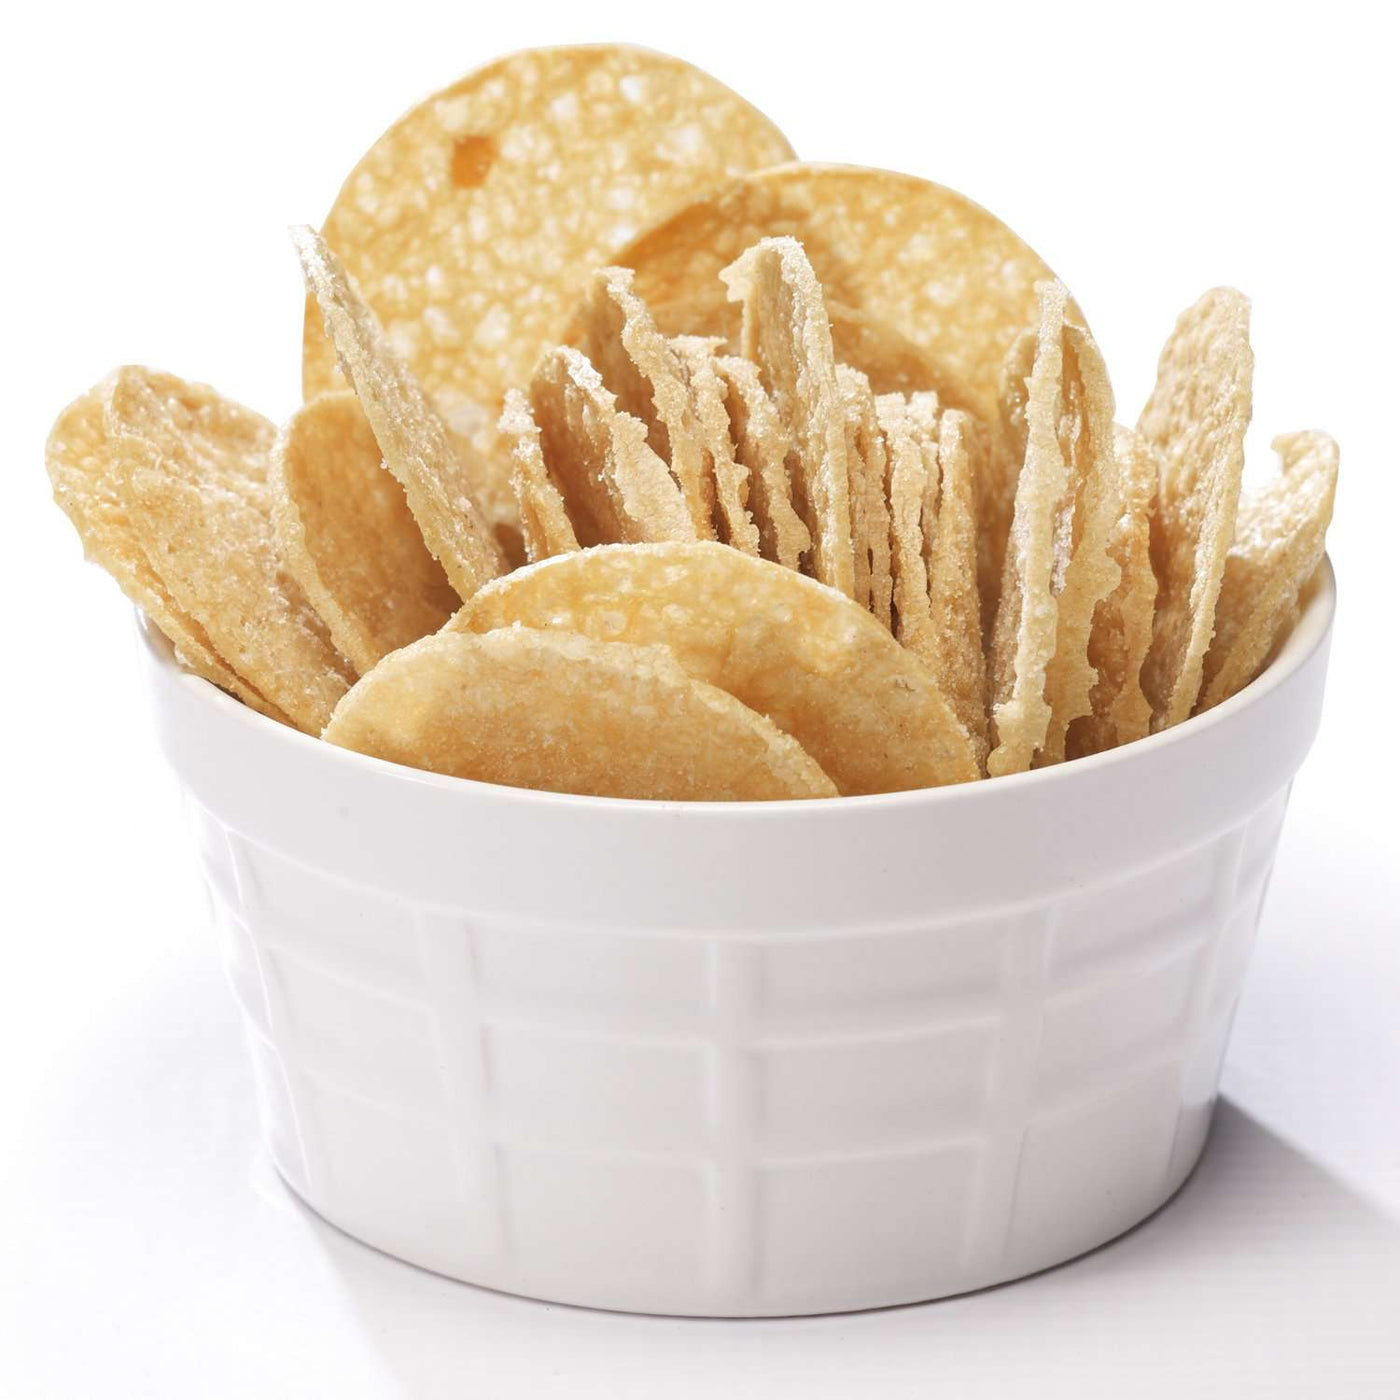 Salt & Vinegar Chips / 7 Bags